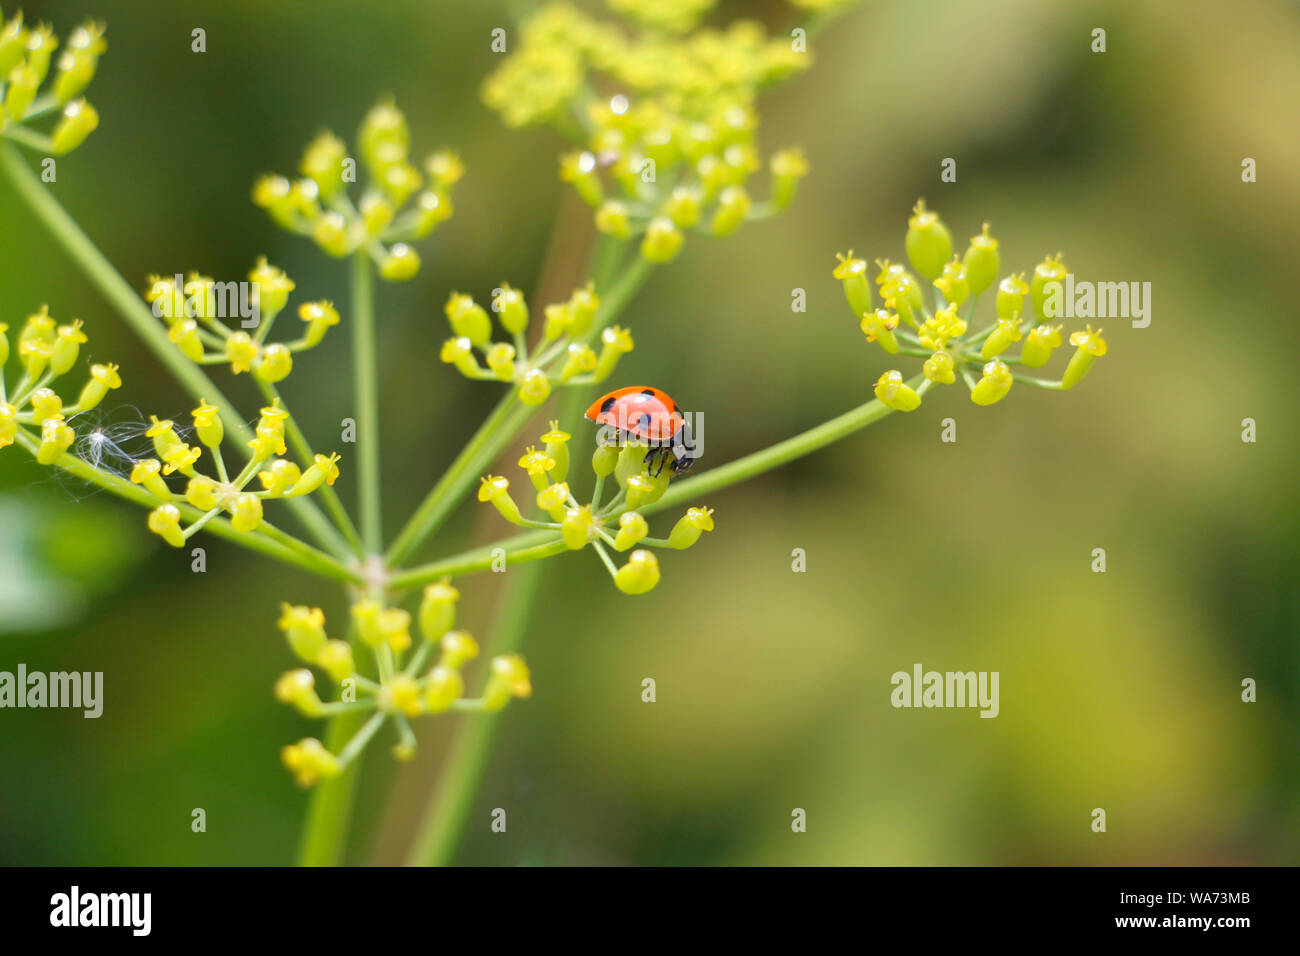 Ladybug on grass background. Macro red ladybug. Ladybug crawls on a flower. Stock Photo